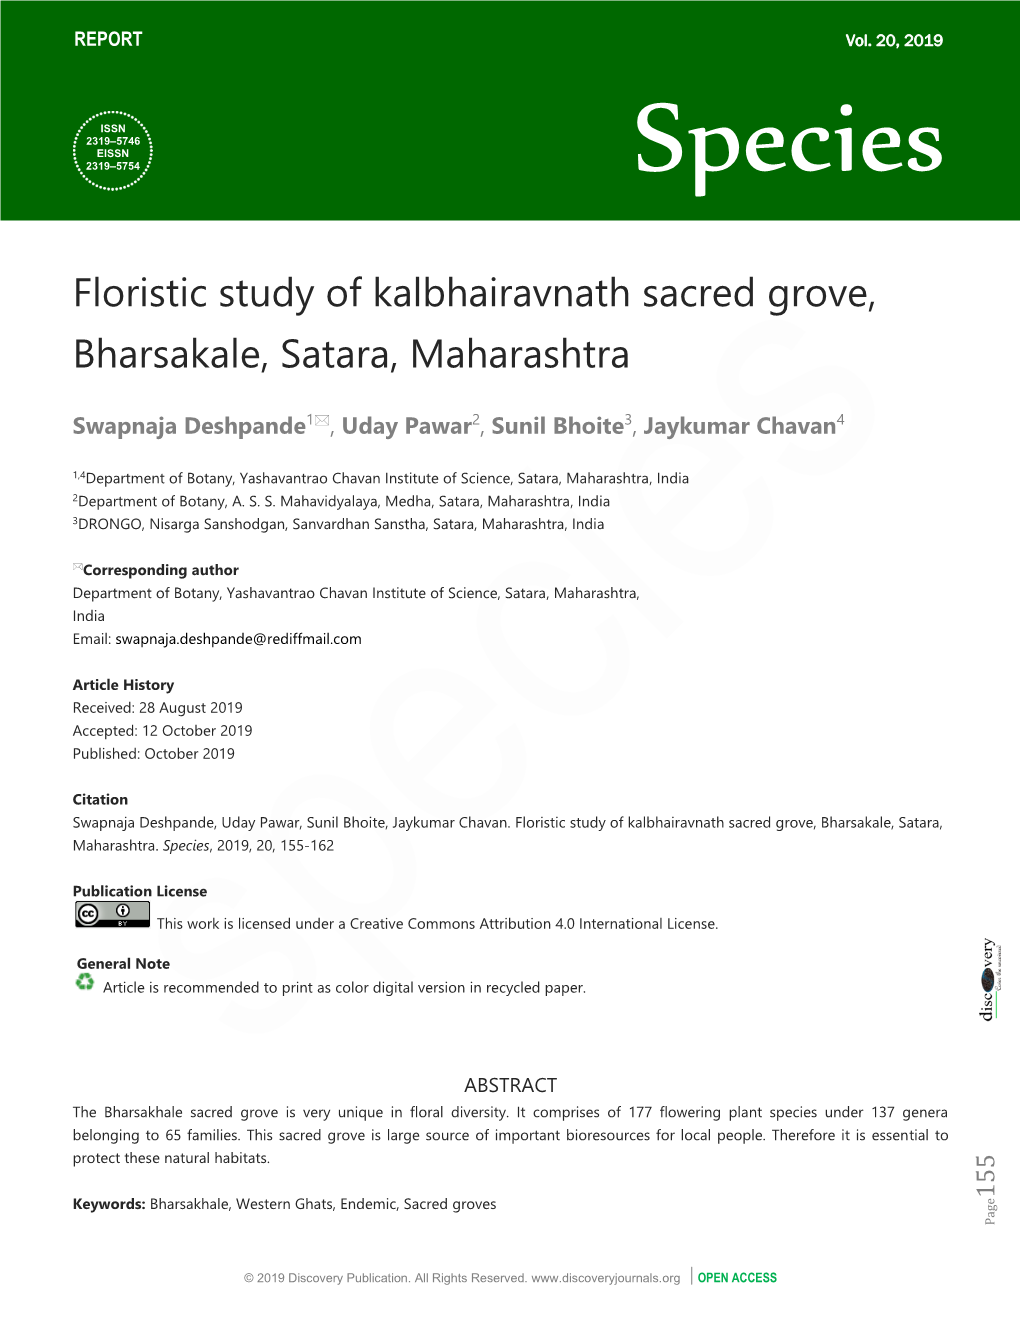 Floristic Study of Kalbhairavnath Sacred Grove, Bharsakale, Satara, Maharashtra